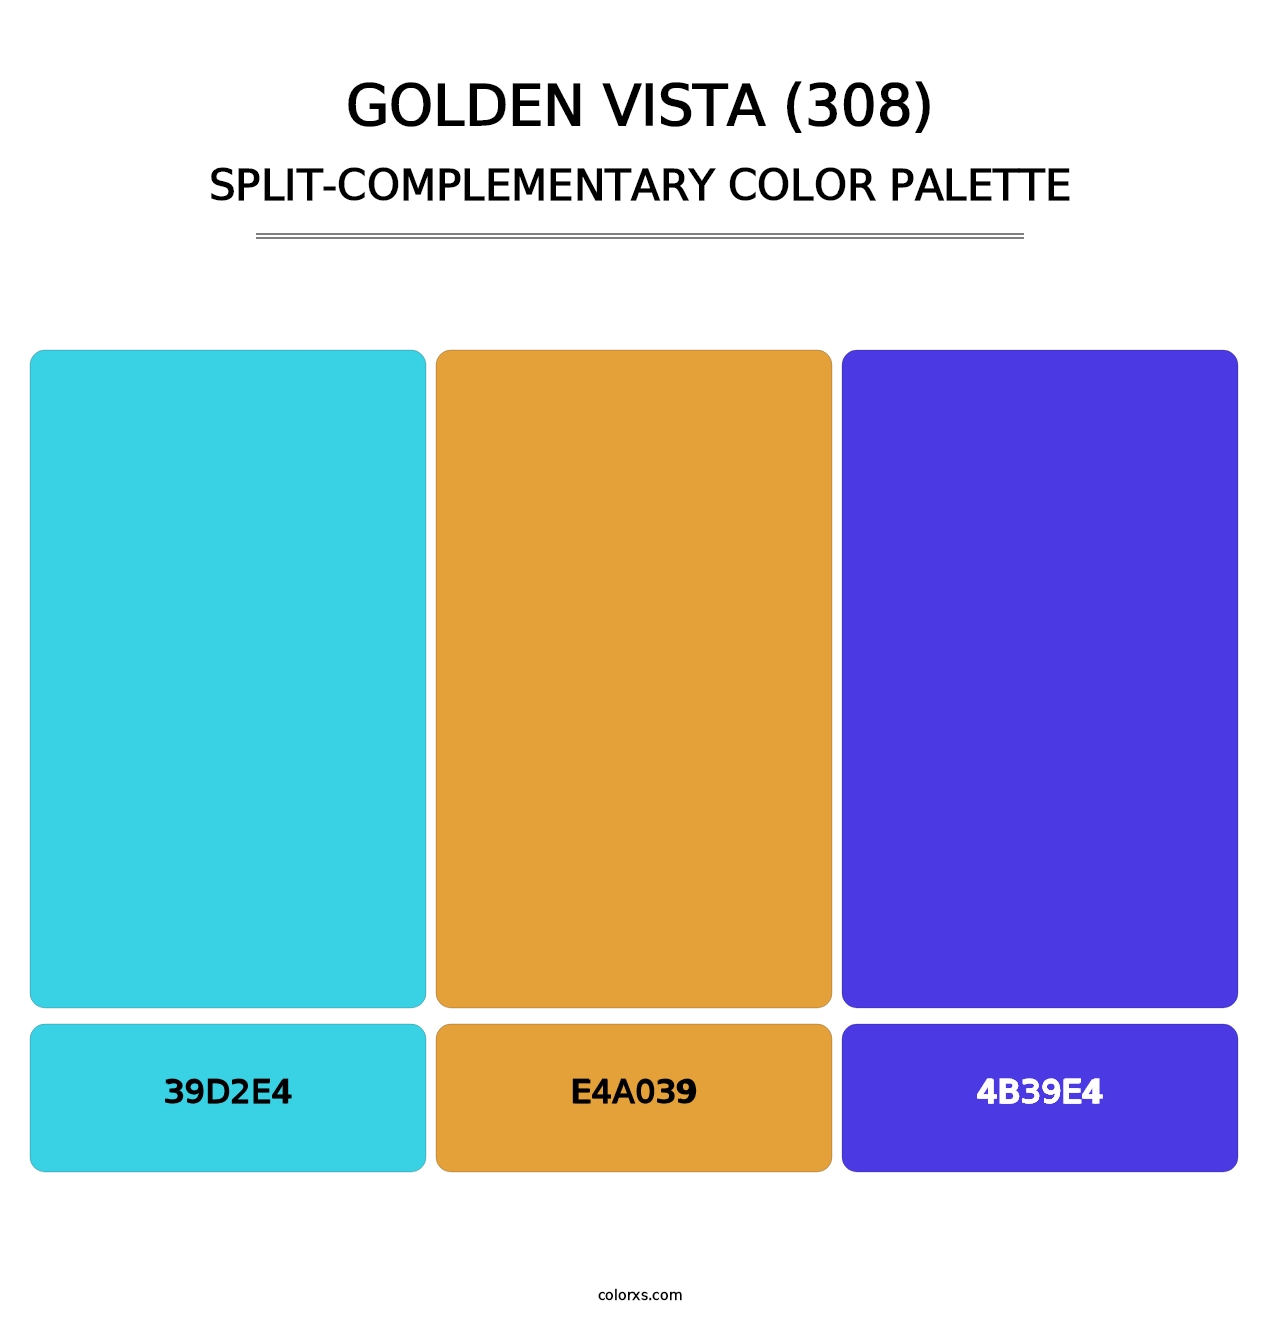 Golden Vista (308) - Split-Complementary Color Palette